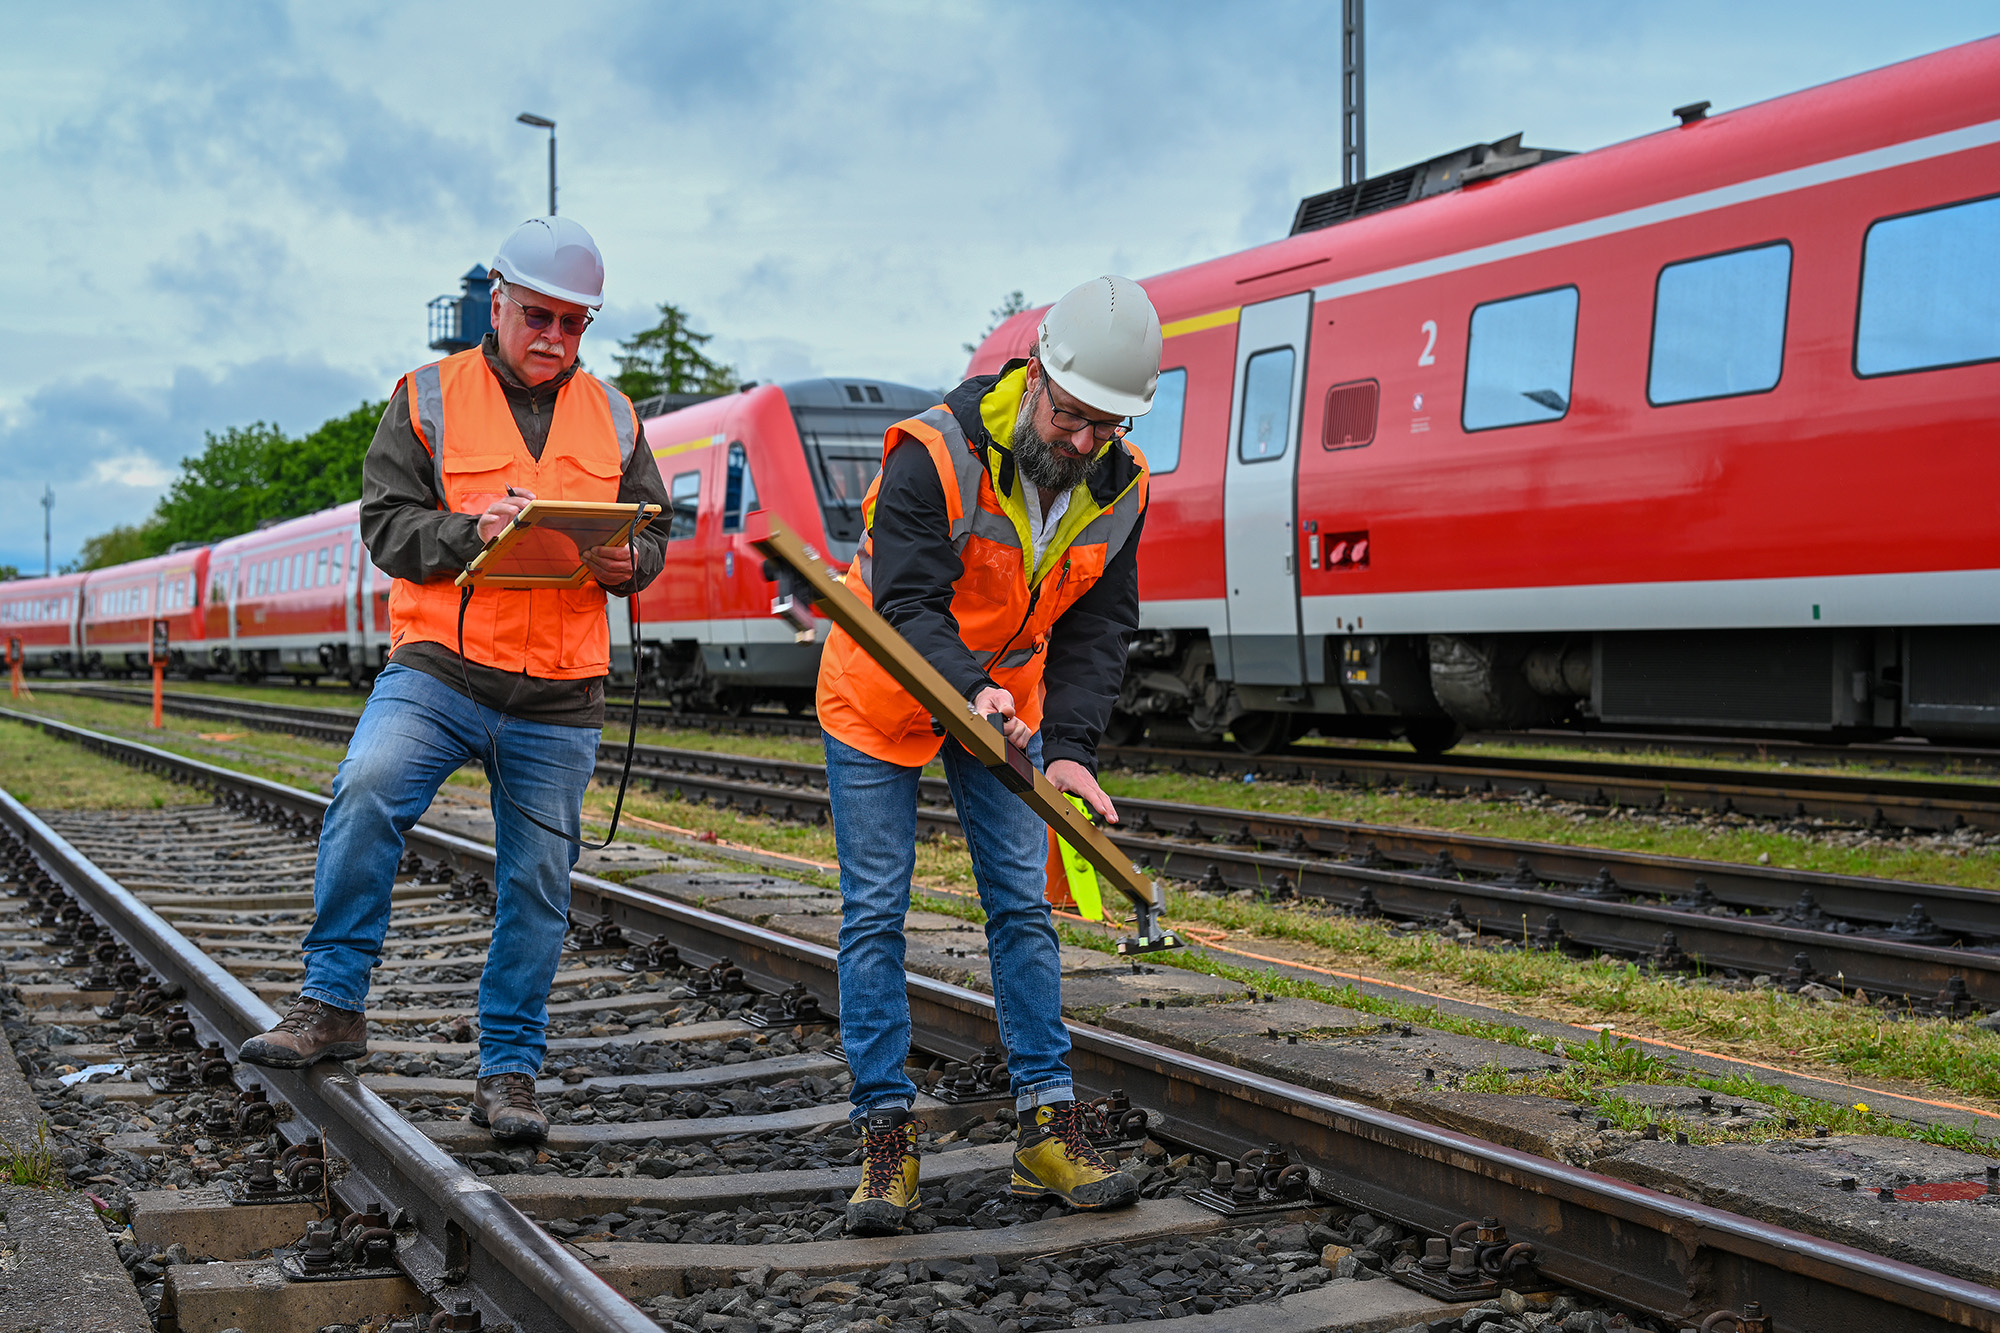 Zwei Mitarbeiter mit Warnwesten und Schutzhelmen stehen auf den Gleisen. Sie haben Werkzeuge in den Händen. Im Hintergrund stehen mehrere rote Triebwagen der Deutschen Bahn.